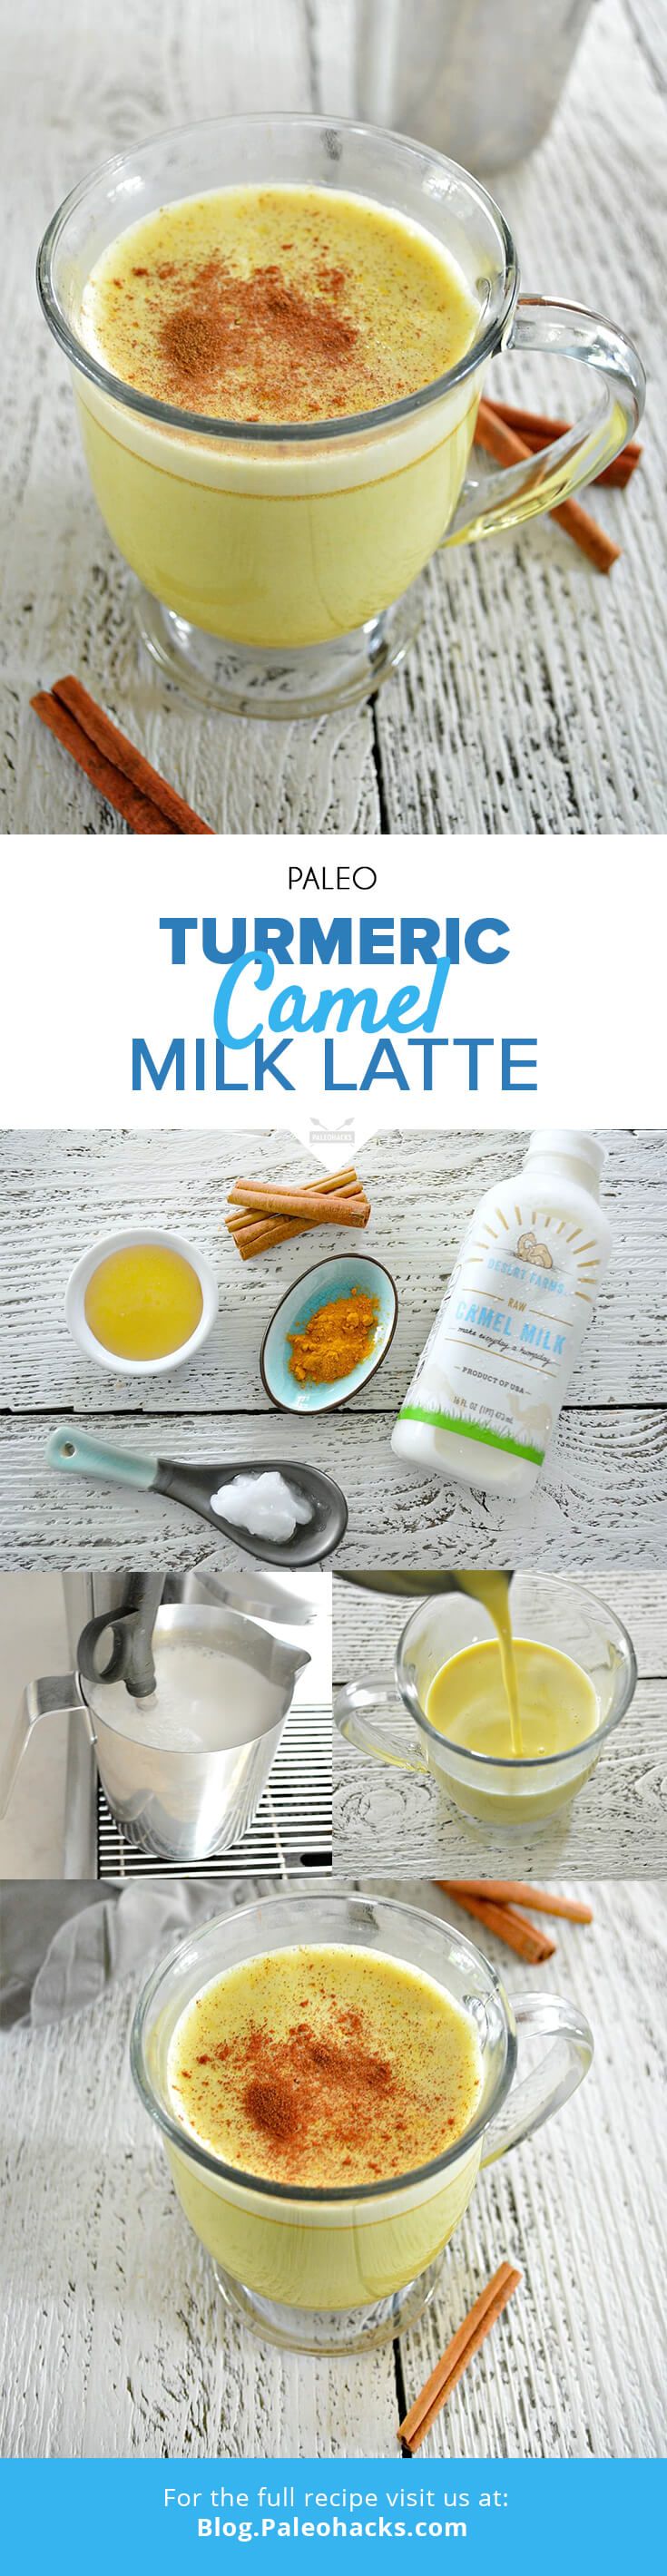 camel milk latte pin